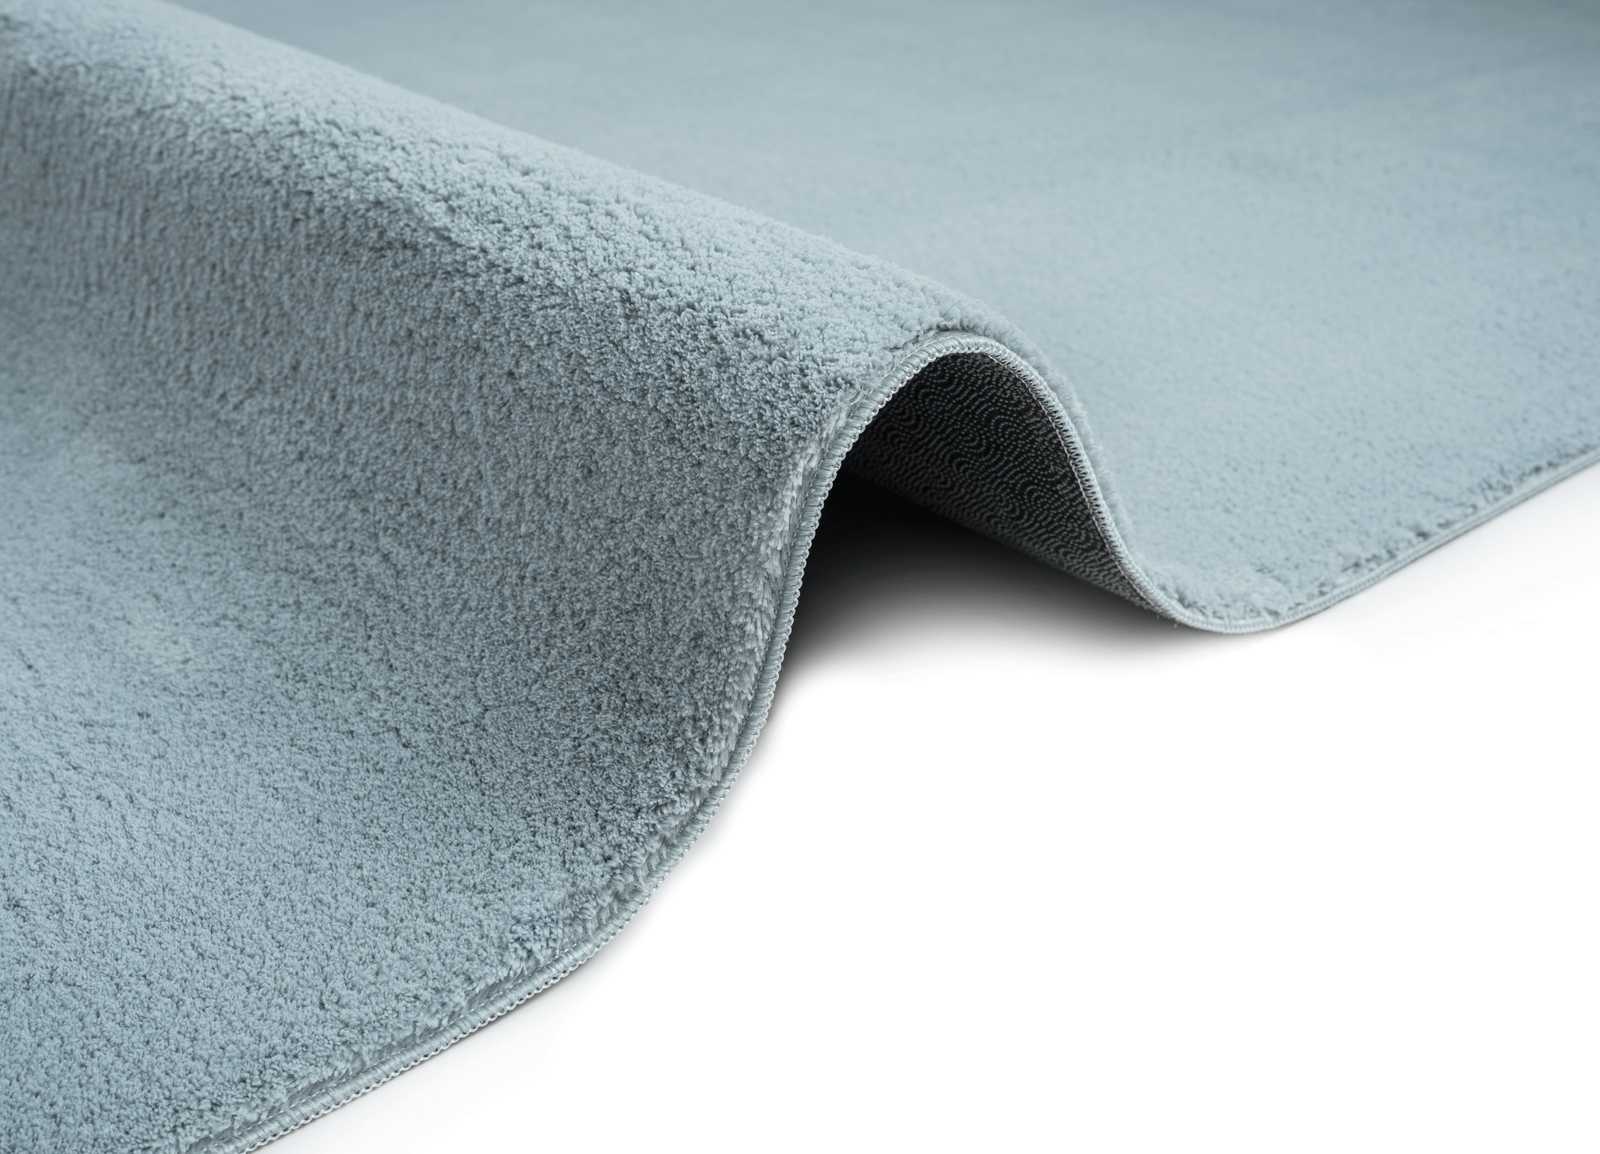             Fluffy high pile carpet in blue - 230 x 160 cm
        